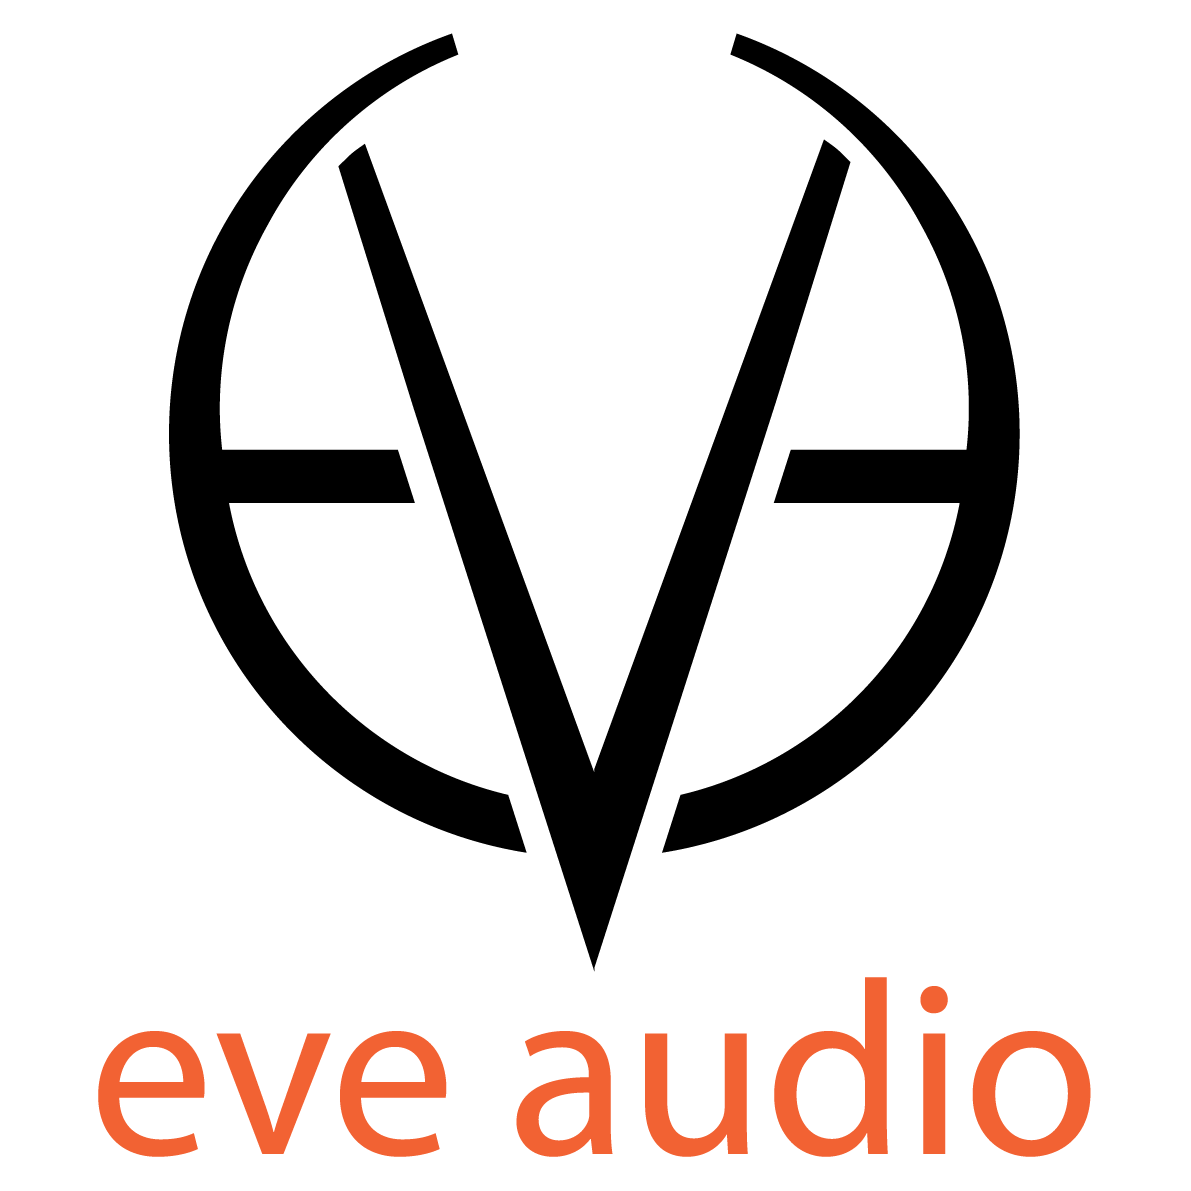 EVE AUDIO в России - магазин, новости, обзоры, интервью, видео, фото, обсуждение.